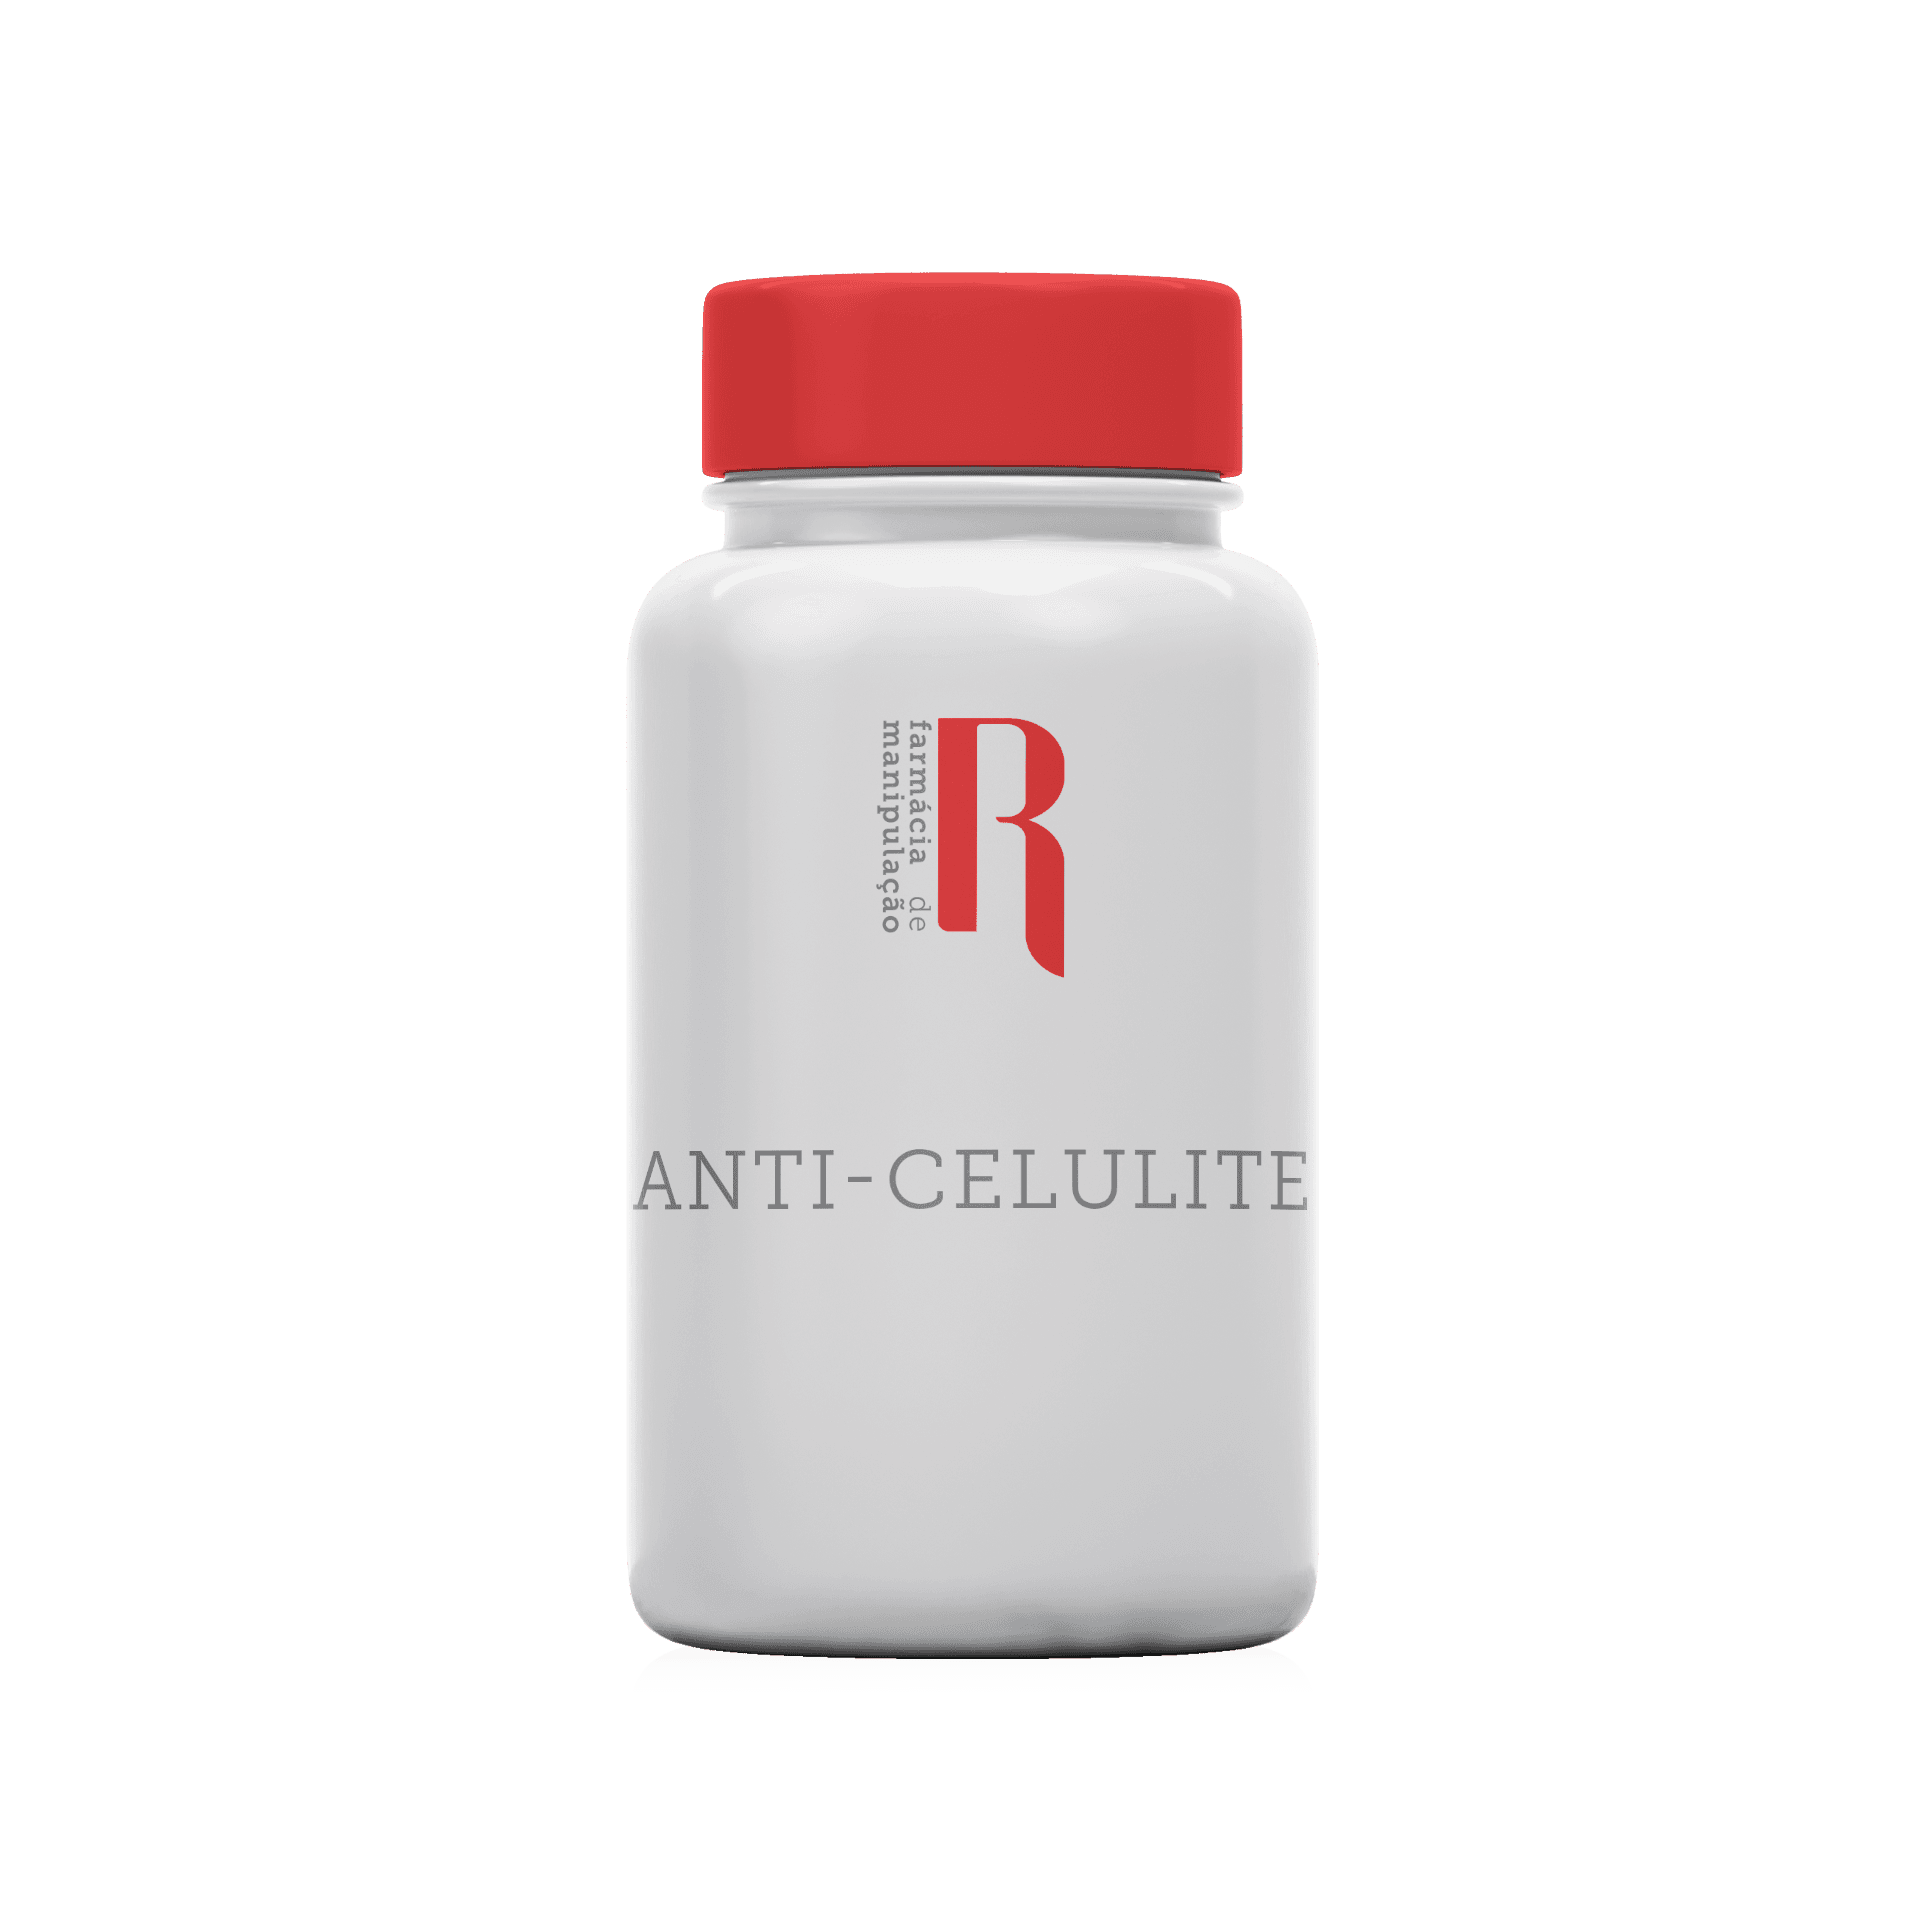 Anti-Celulite